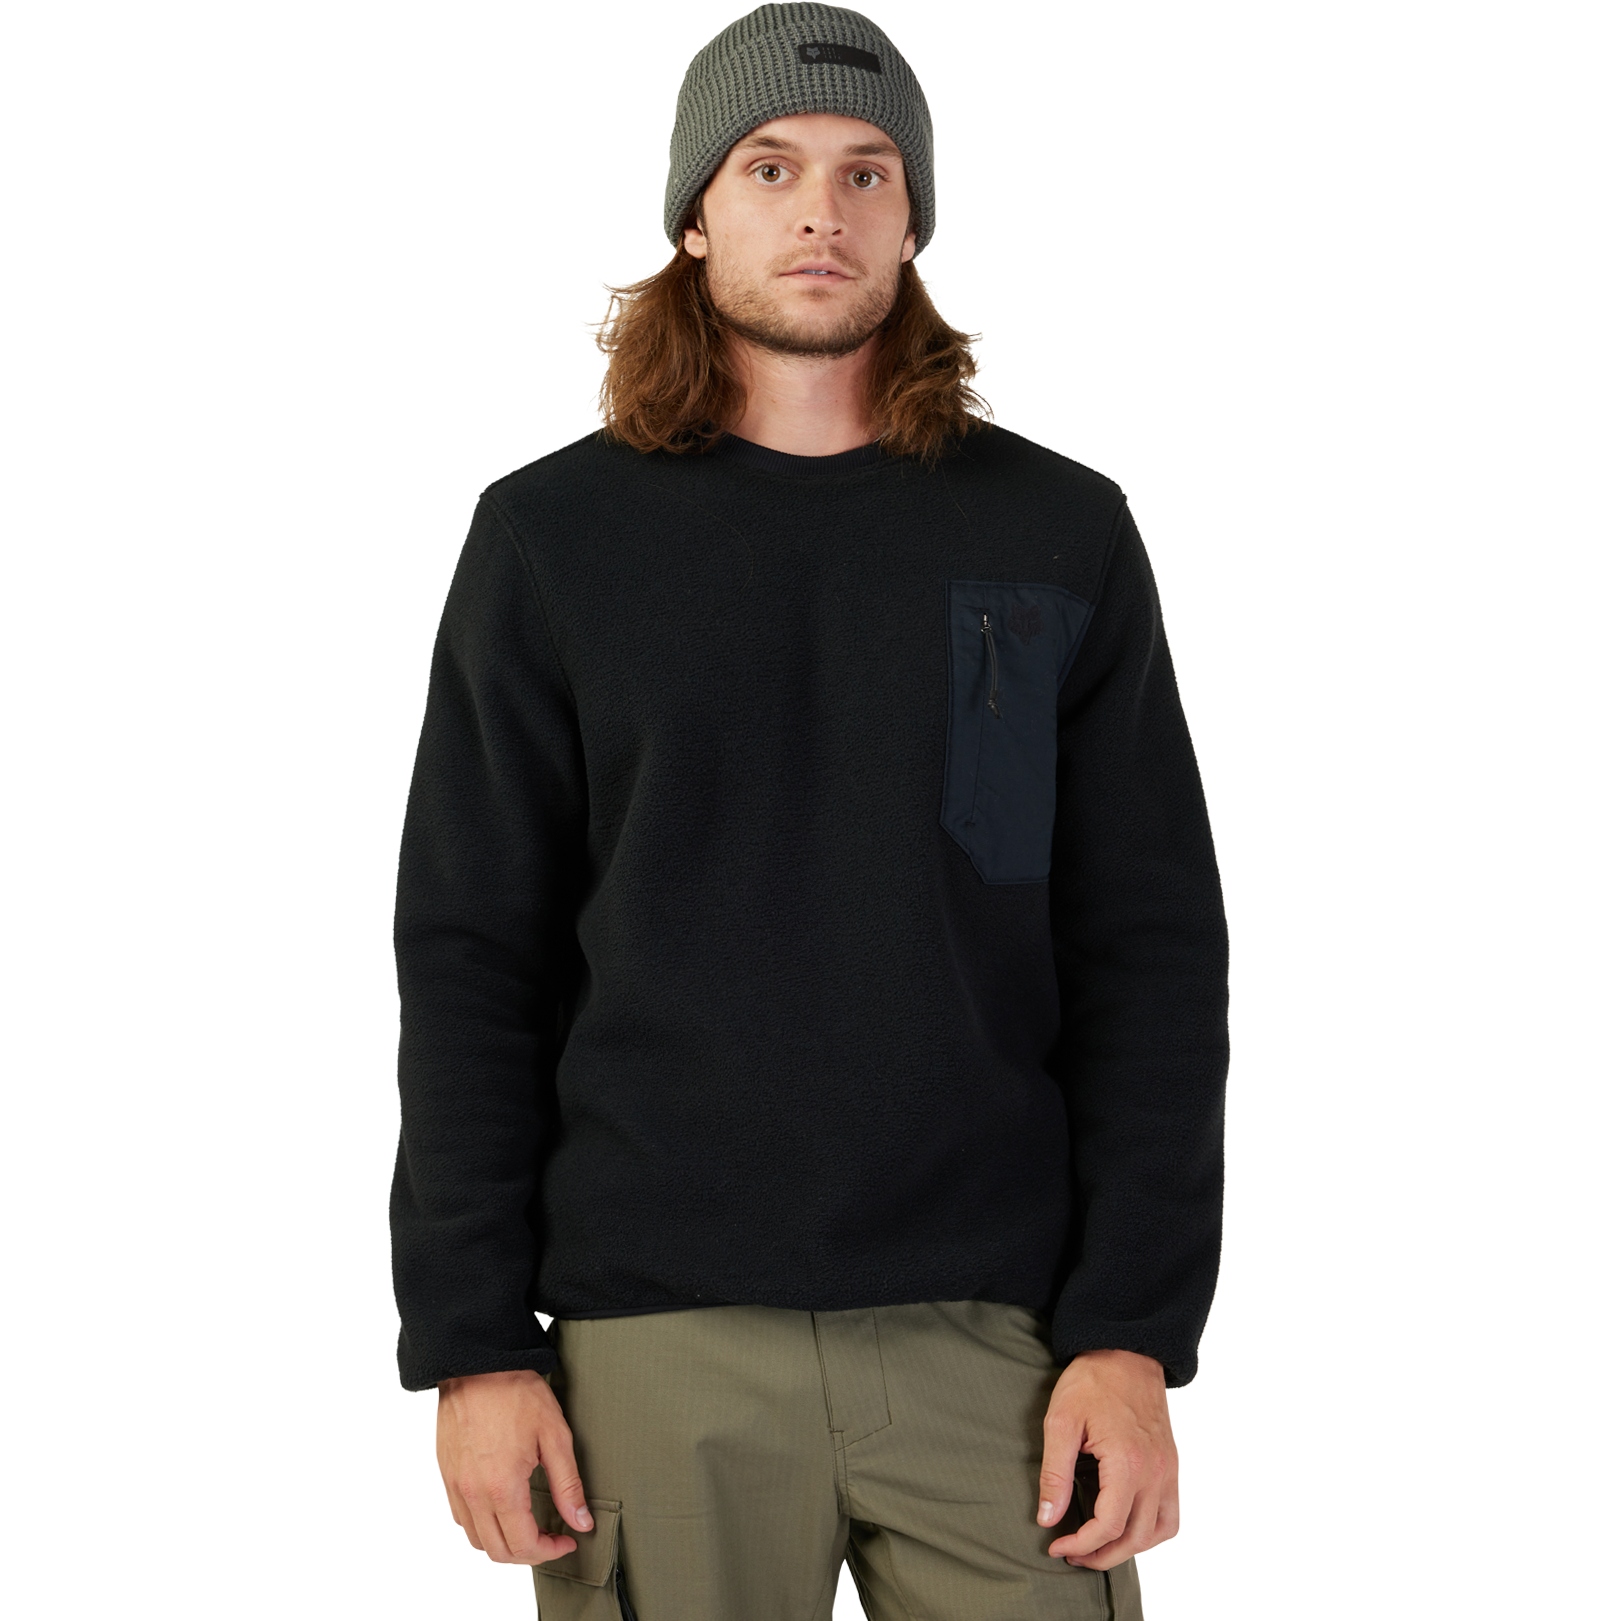 Productfoto van FOX Survivalist Sherpa Fleece Crew Sweatshirt - zwart